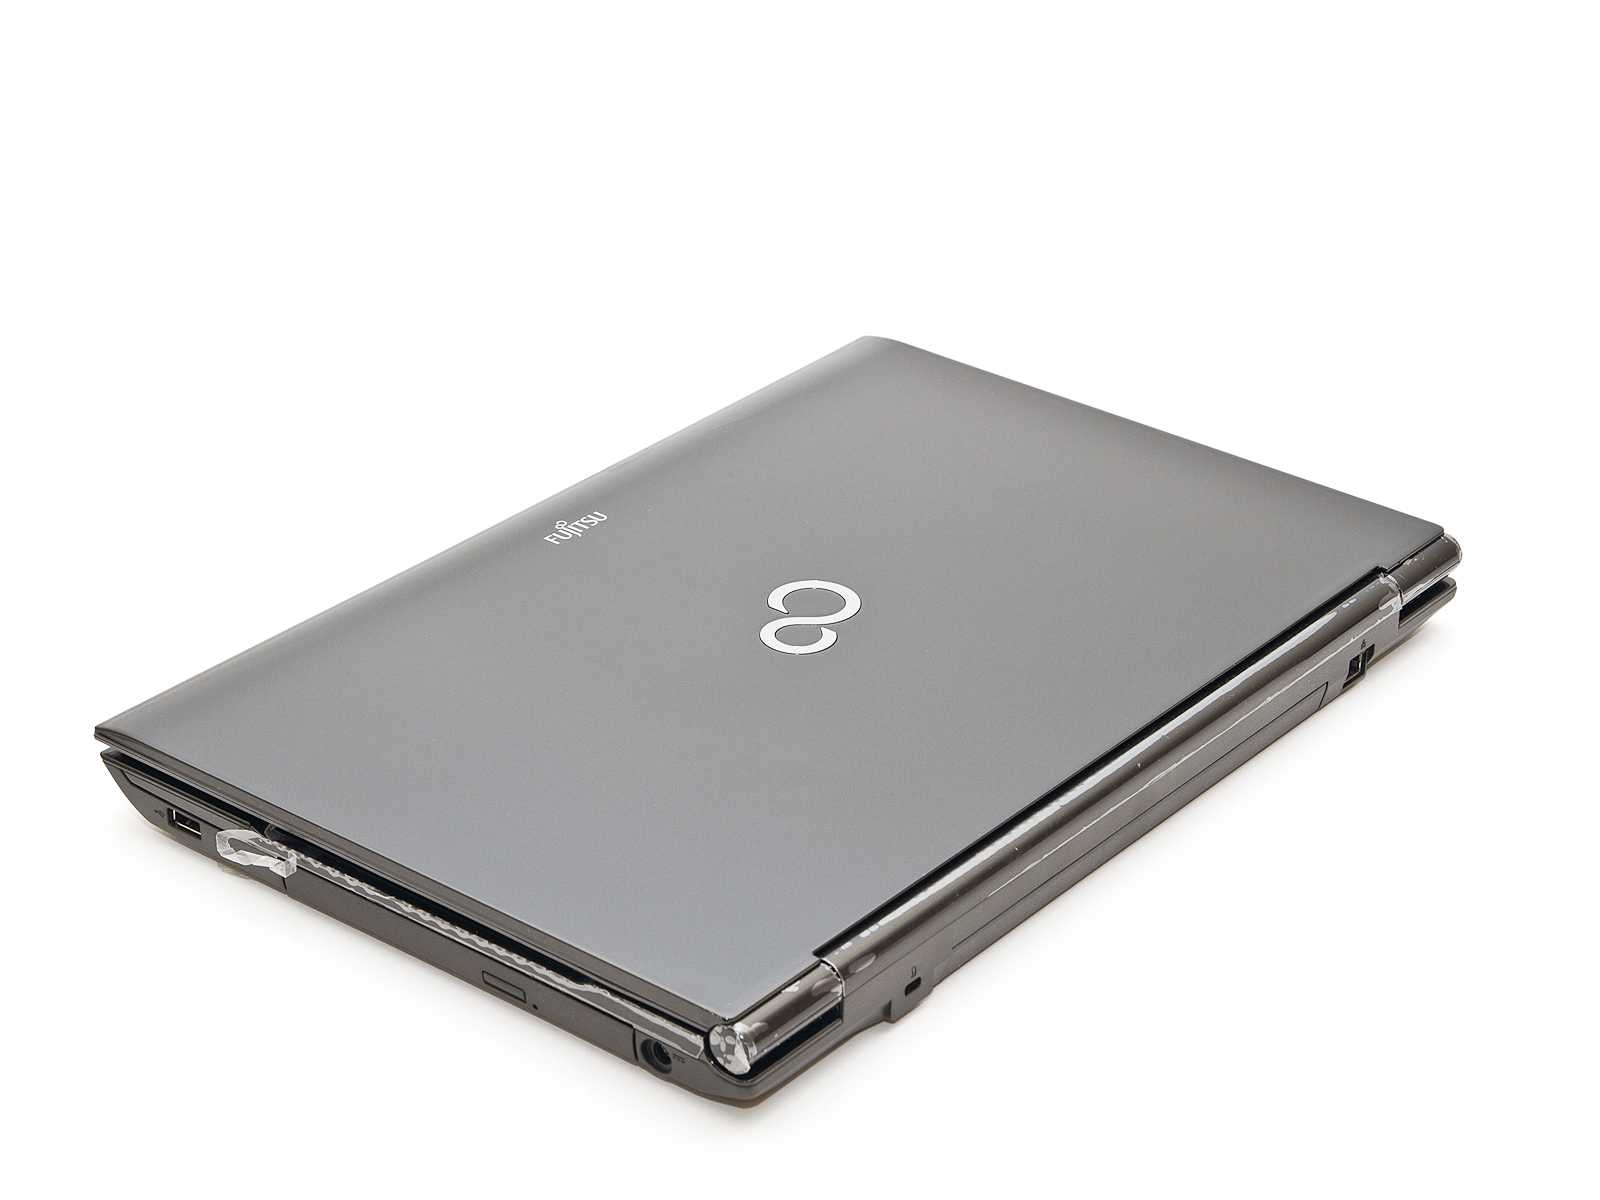 Ноутбук fujitsu lifebook ah532: обзор, купить, отзывы | портал о компьютерах и бытовой технике